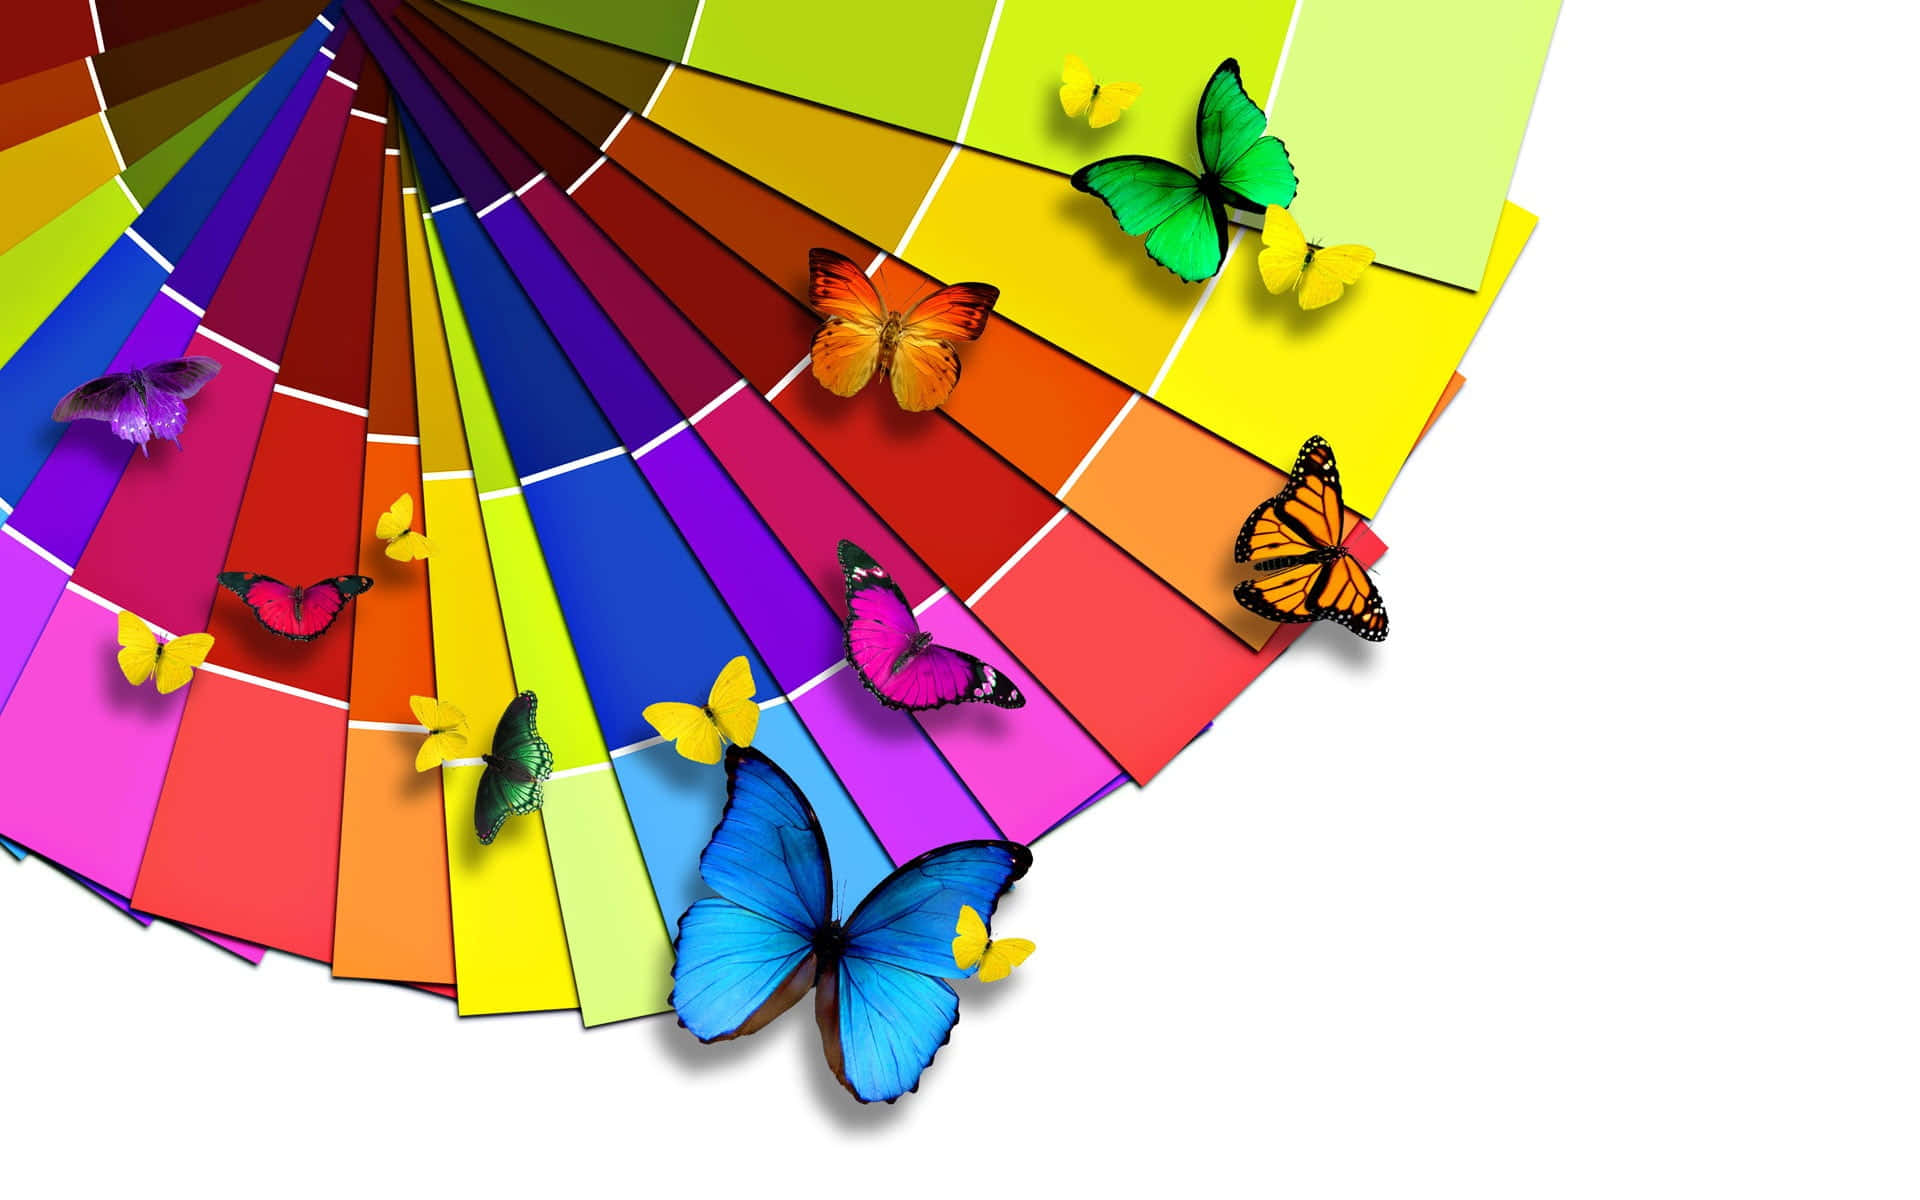 Et farverigt farvehjul med sommerfugle, der flyver omkring det.